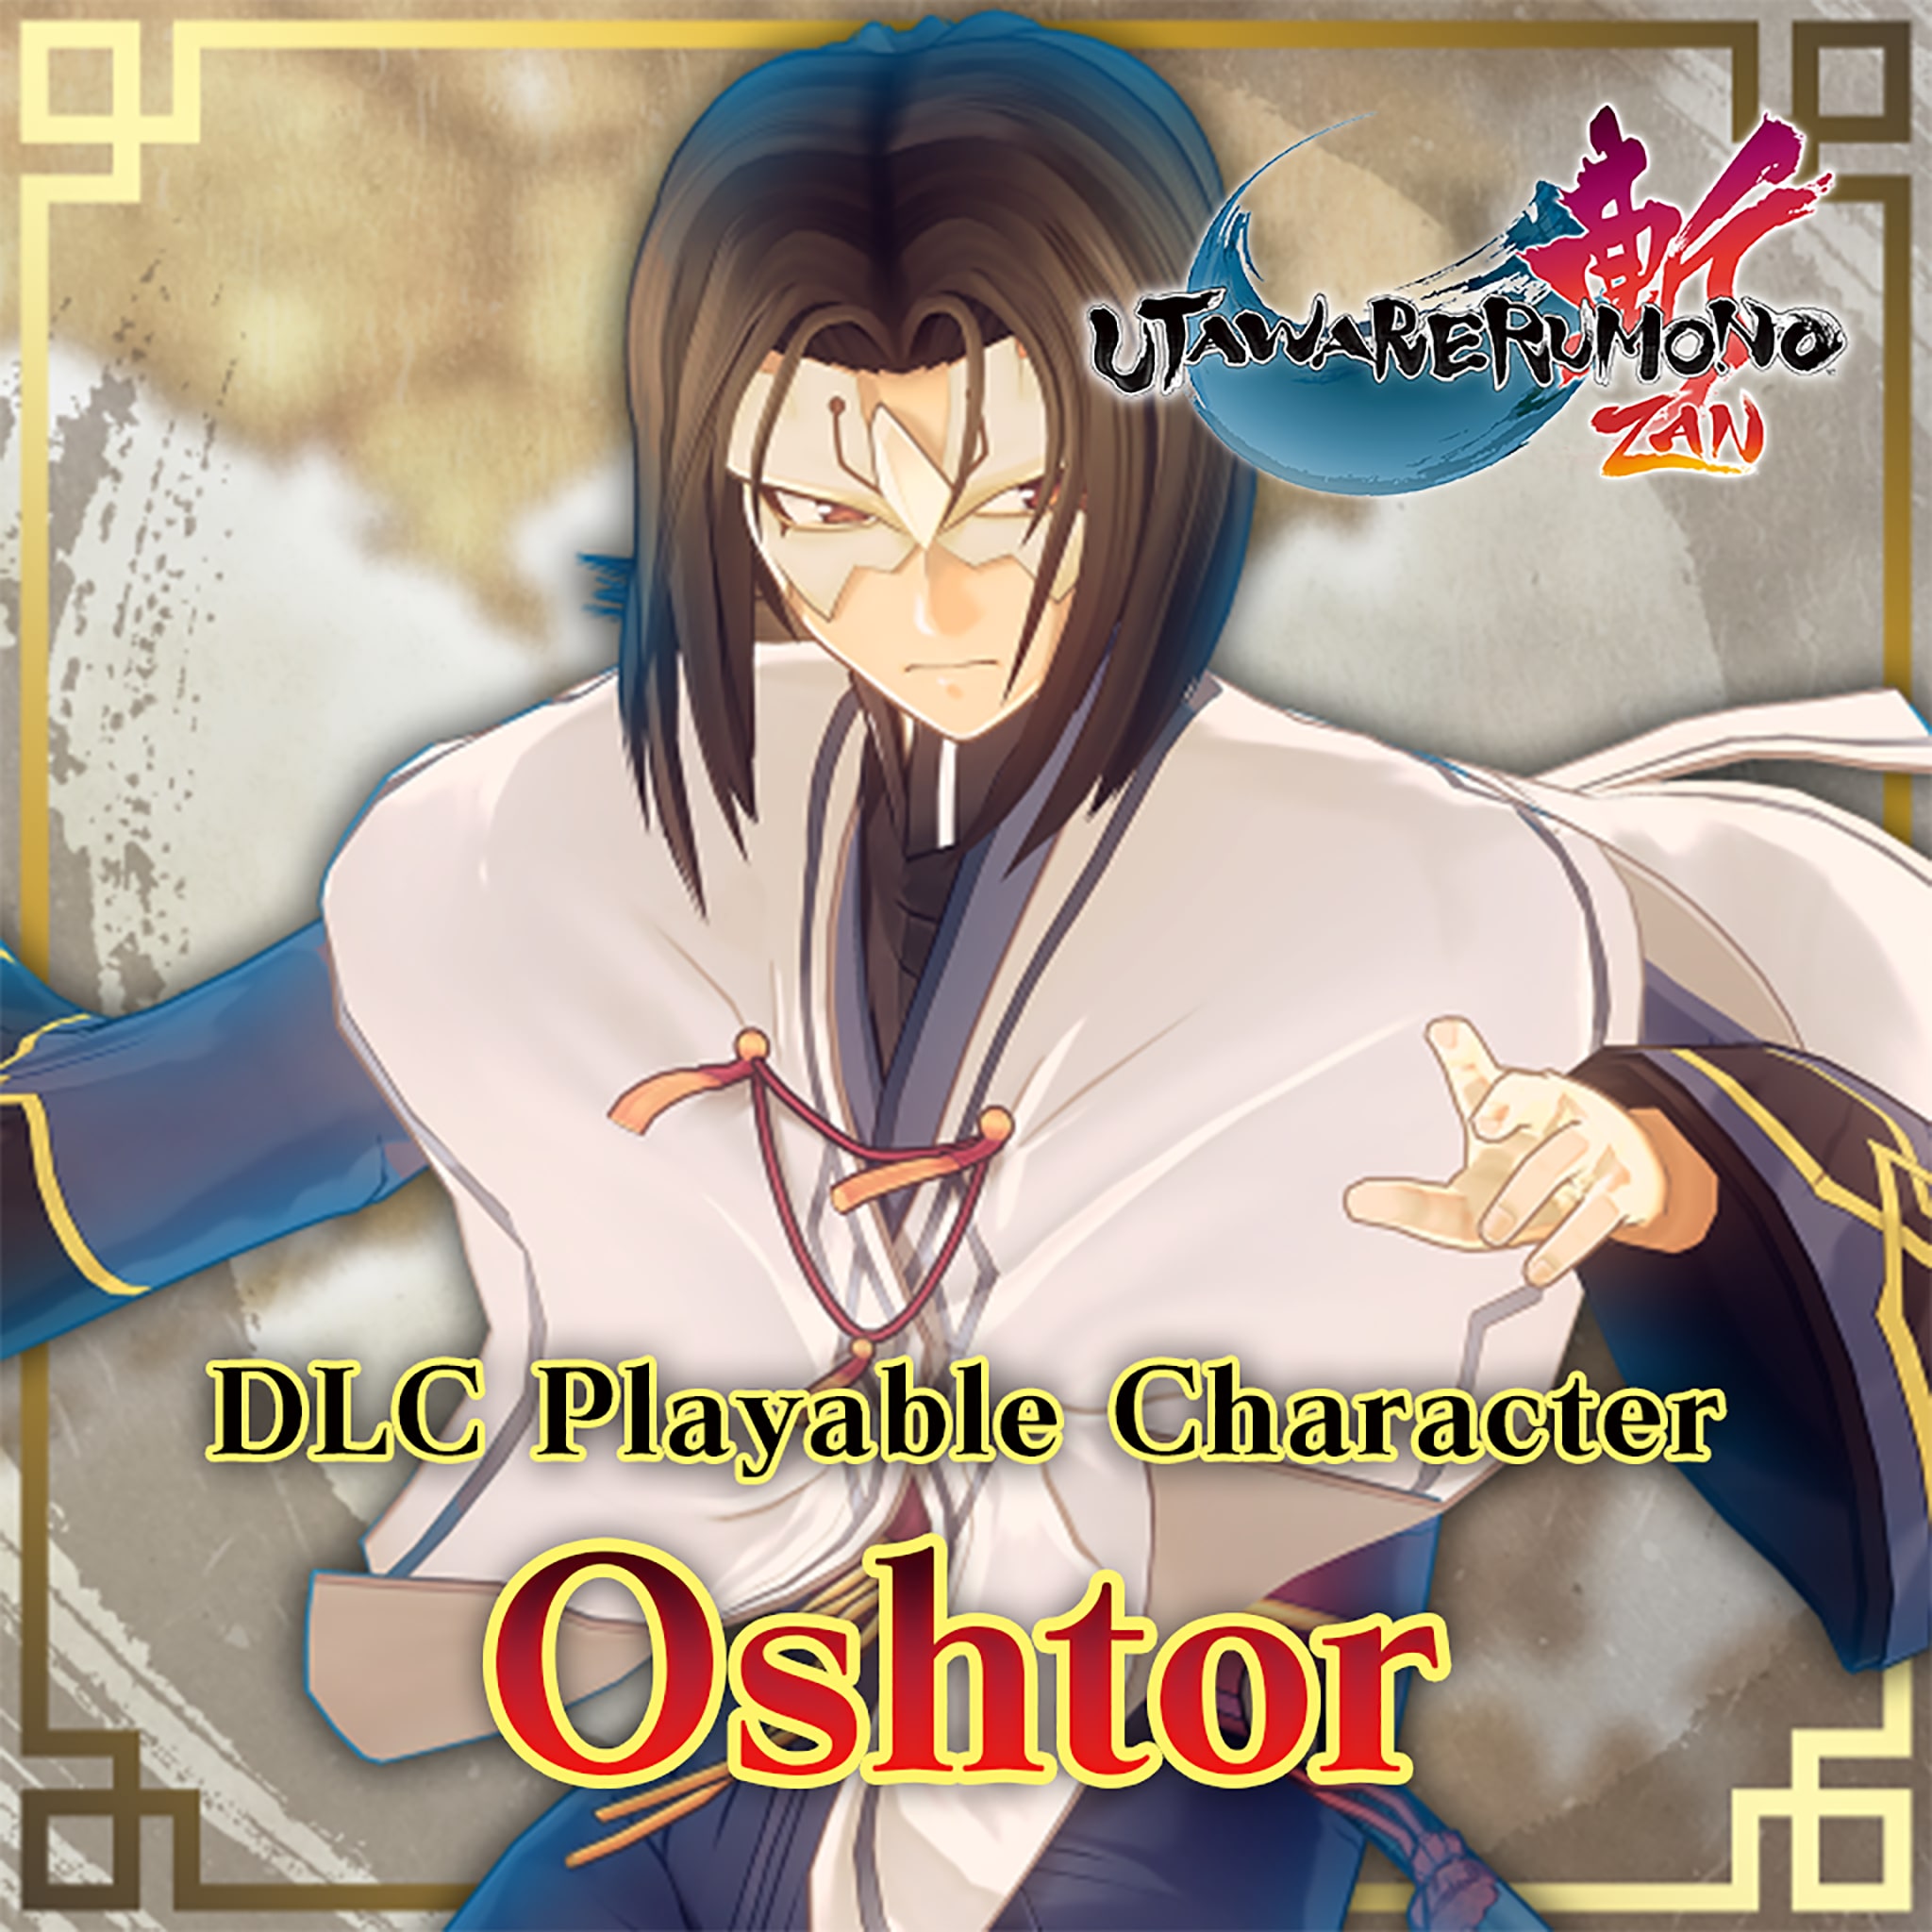 Utawarerumono: ZAN Playable Character - Oshtor